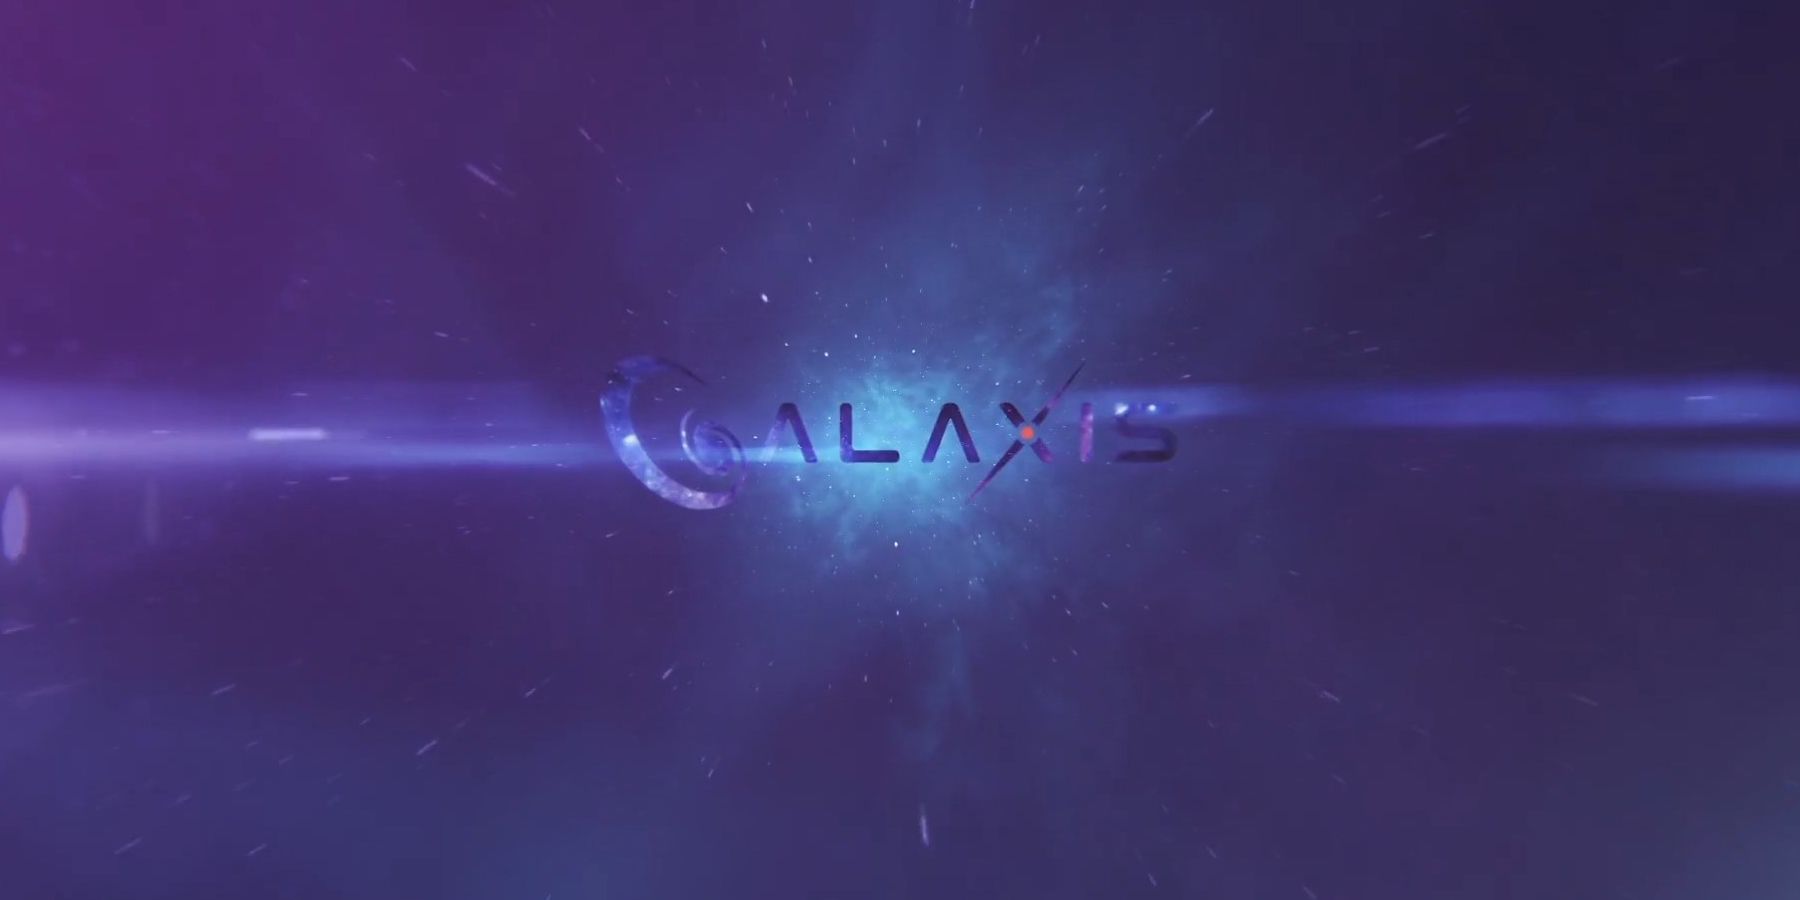 Интервью Galaxis: генеральный директор Макс Галлардо подробно описывает системы потоковой платформы, модерацию сообщества и многое другое